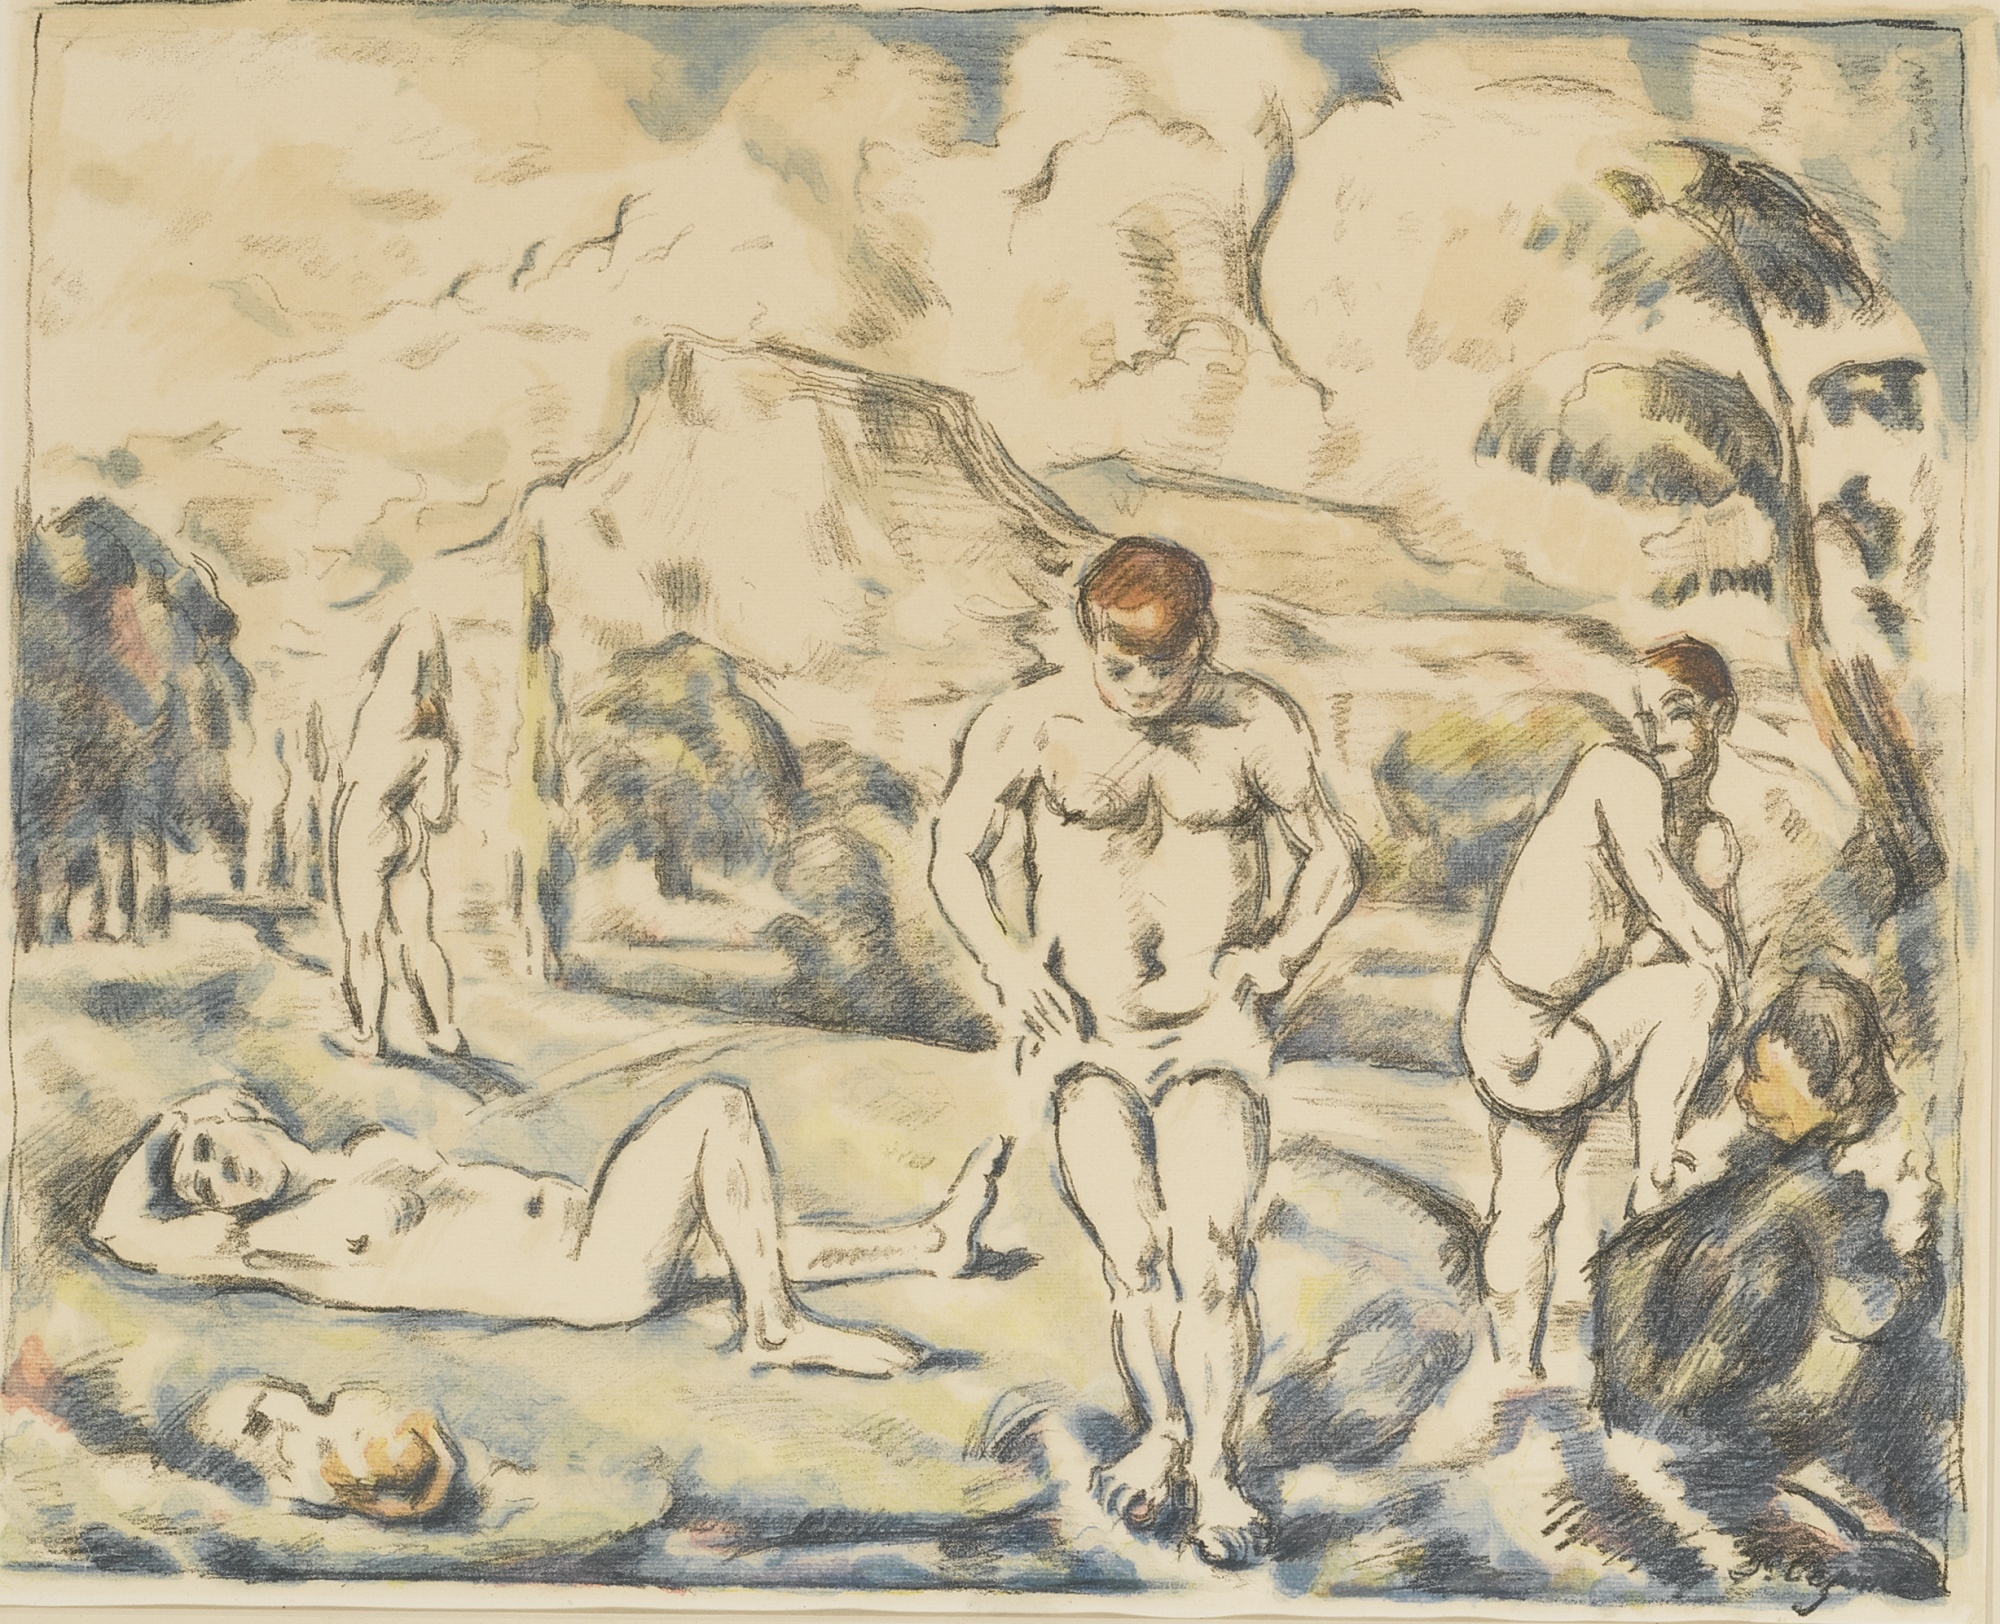 LES BAIGNEURS (GRAND PLANCHE) (VENTURI 1157; DRUICK 11) by Paul Cézanne, 1896-1898